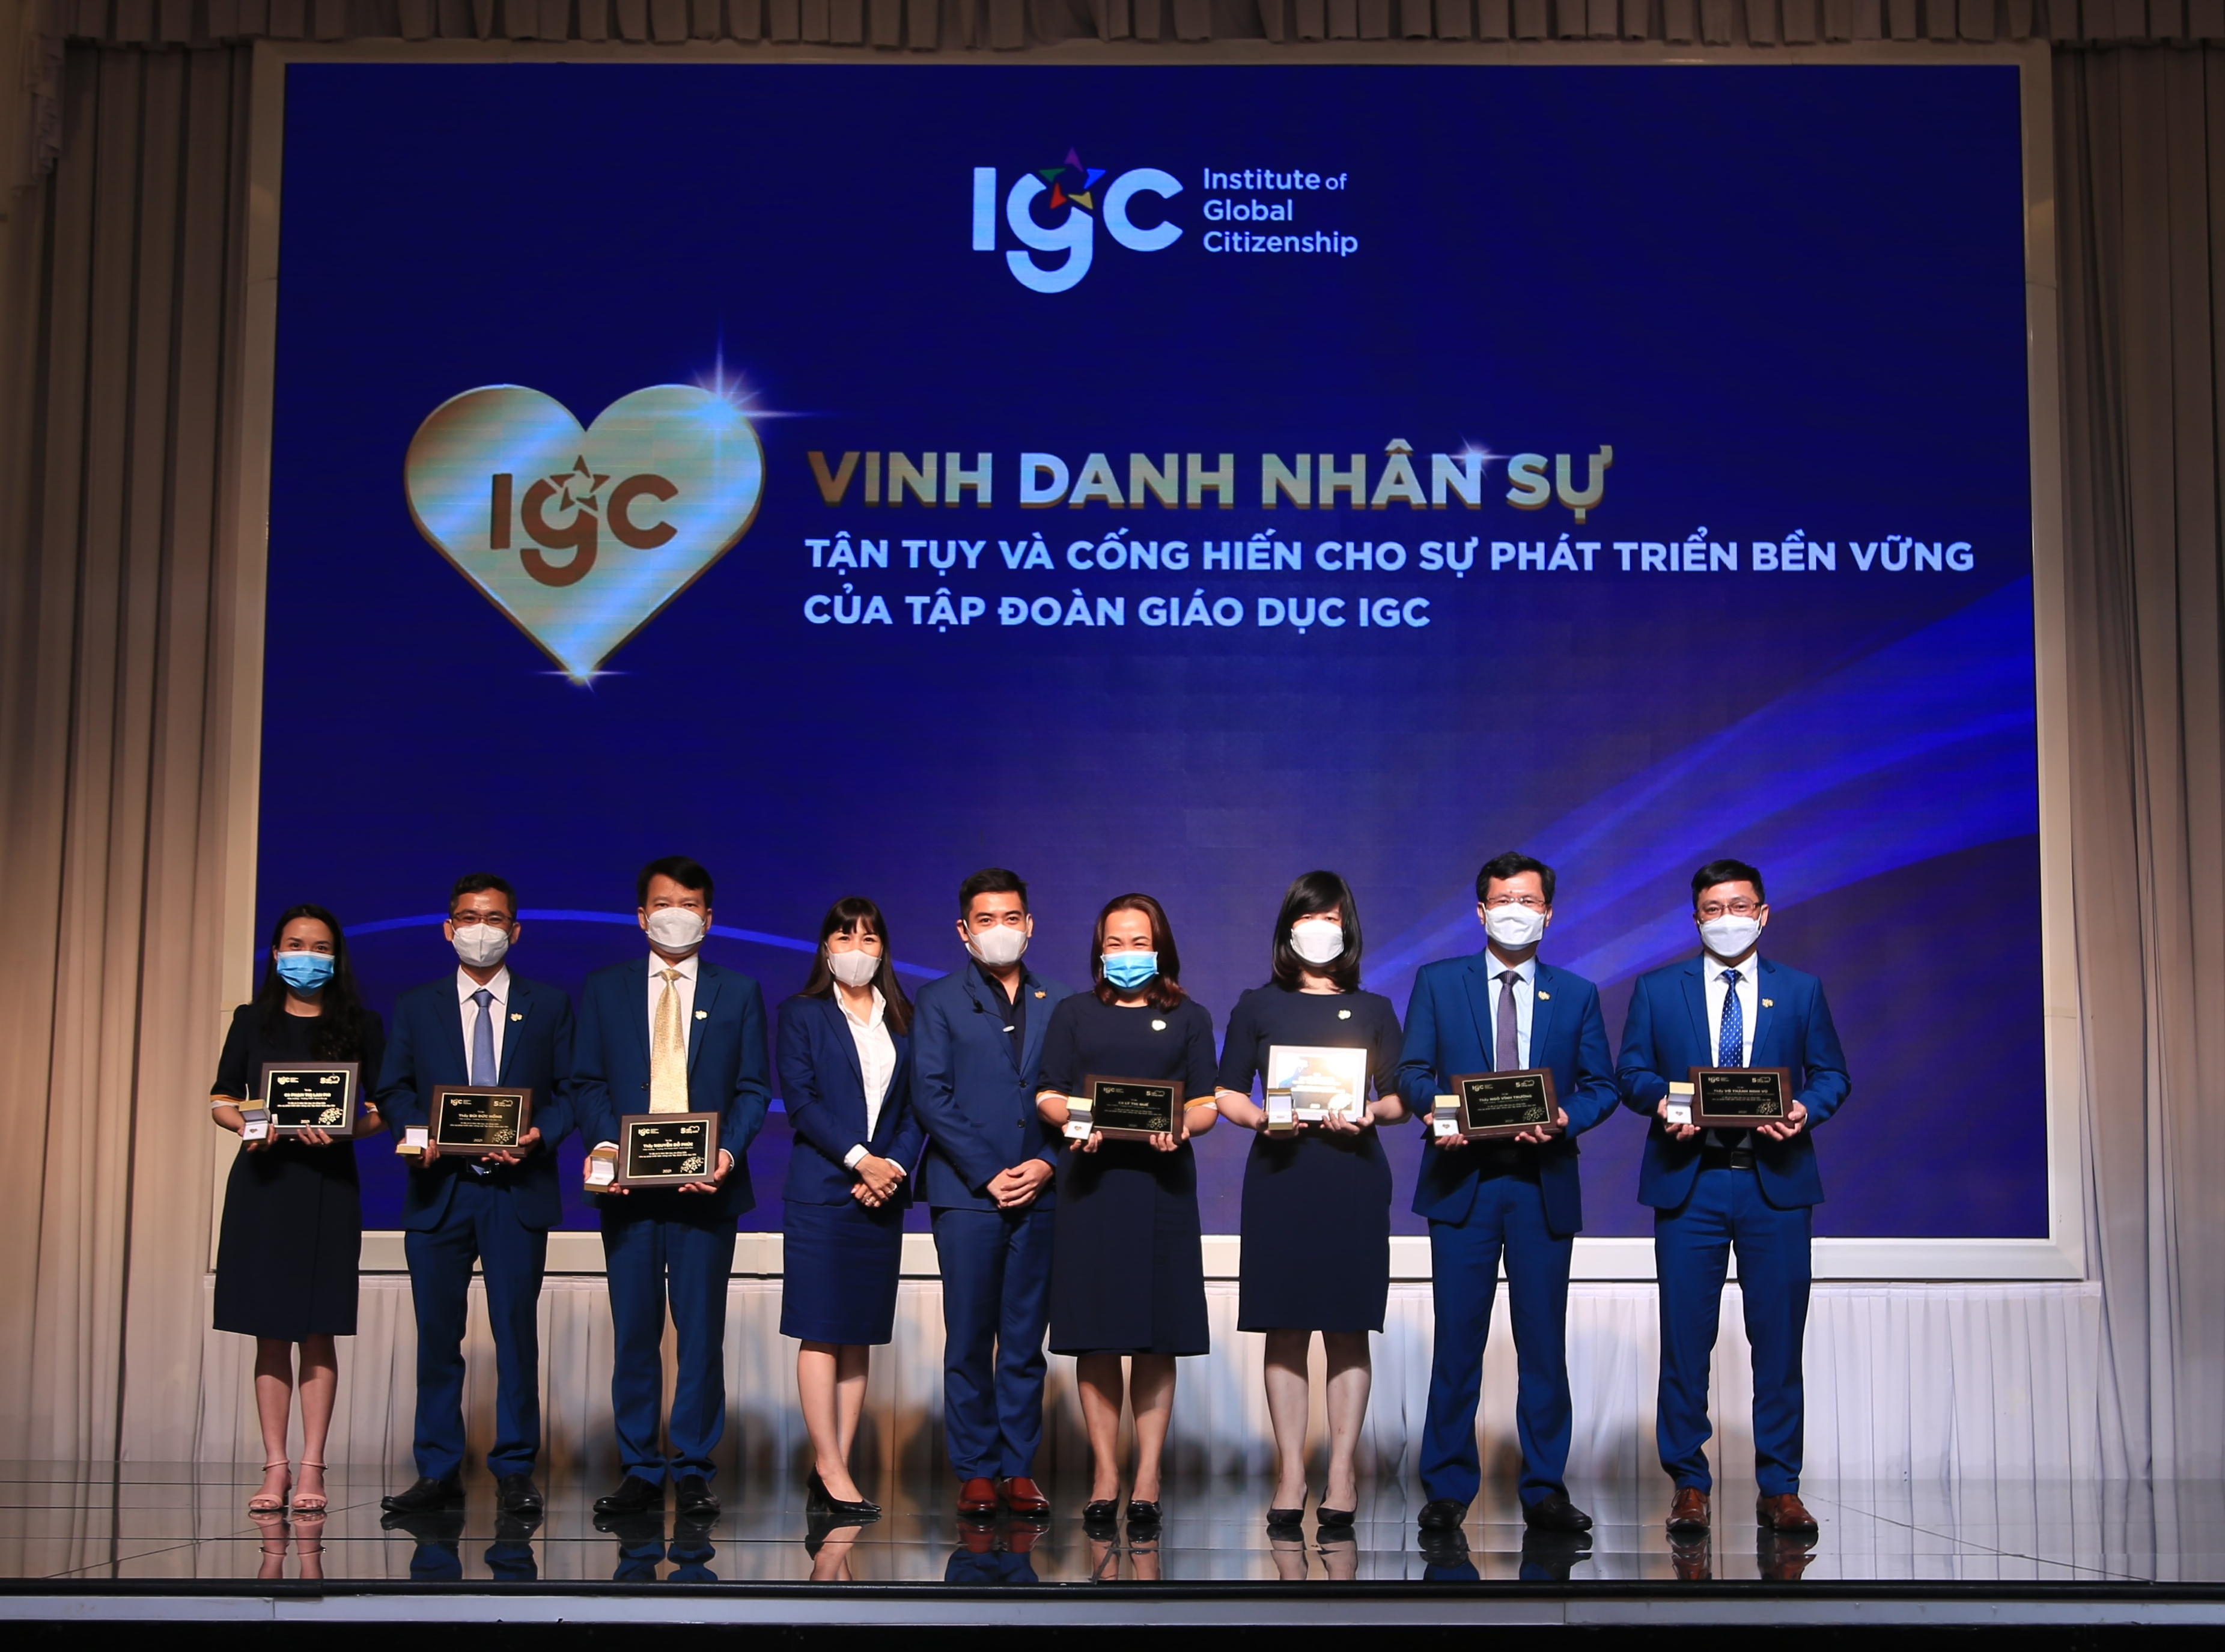 Tập đoàn Giáo dục IGC gia nhập cộng đồng "Nơi làm việc tốt nhất châu Á năm 2022"